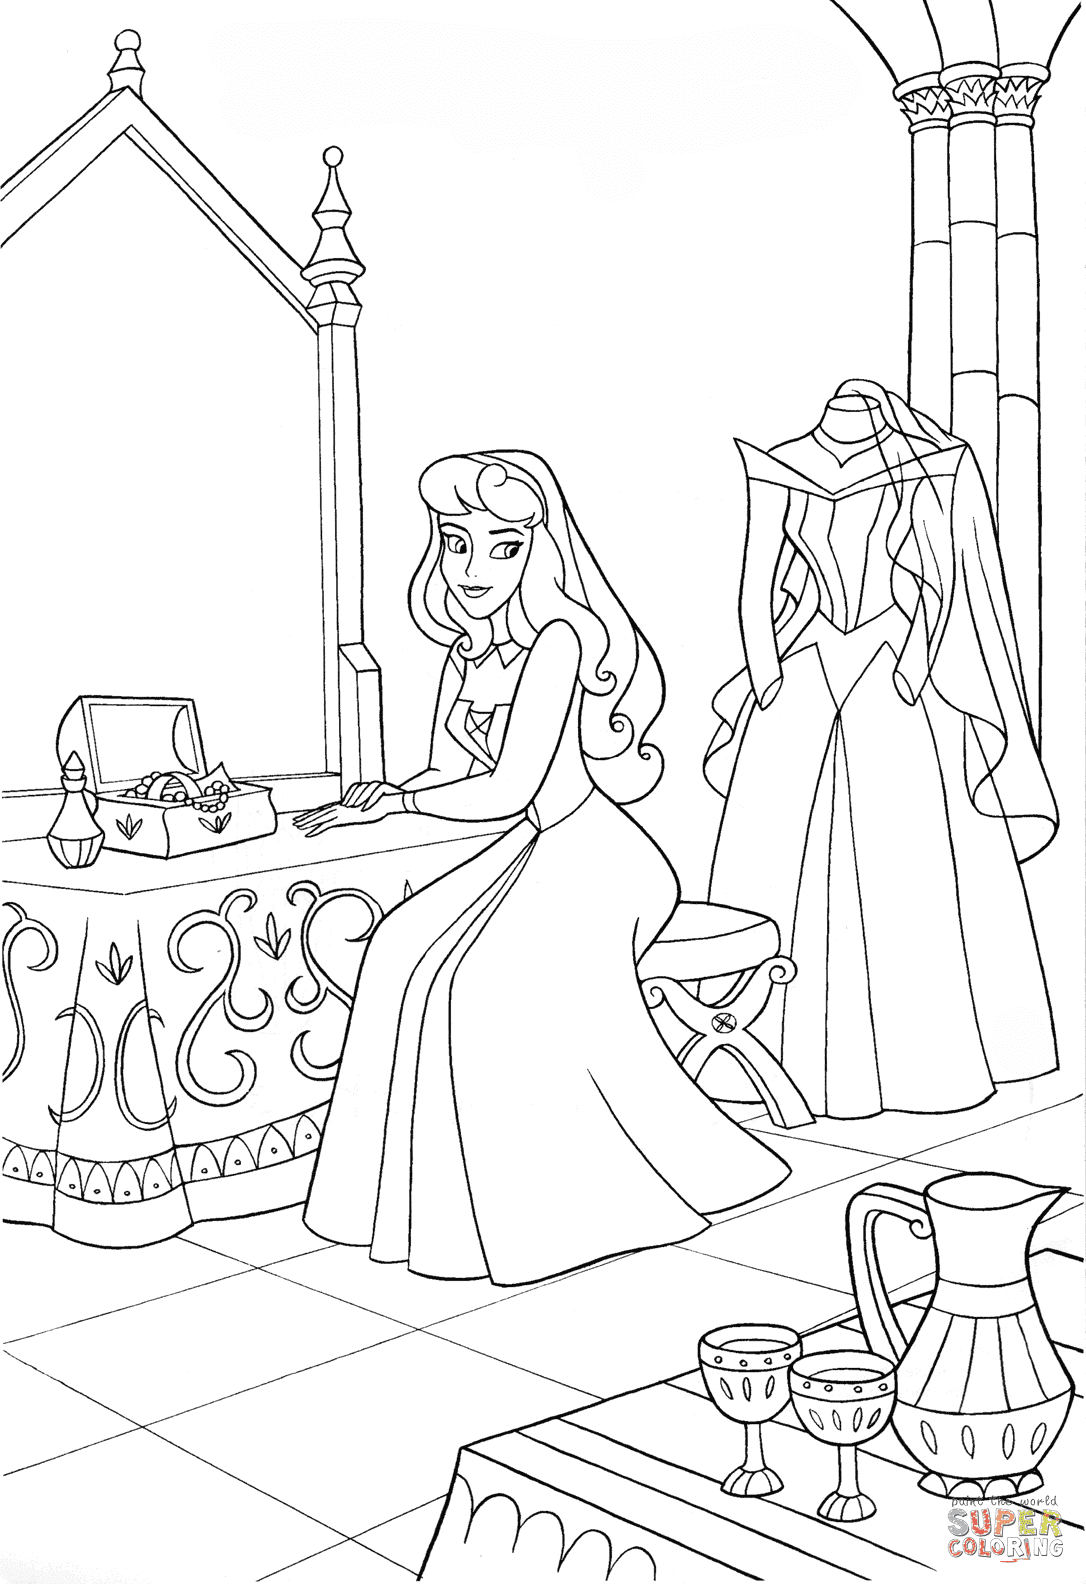 Le jour du mariage d'Aurora de La Belle au bois dormant